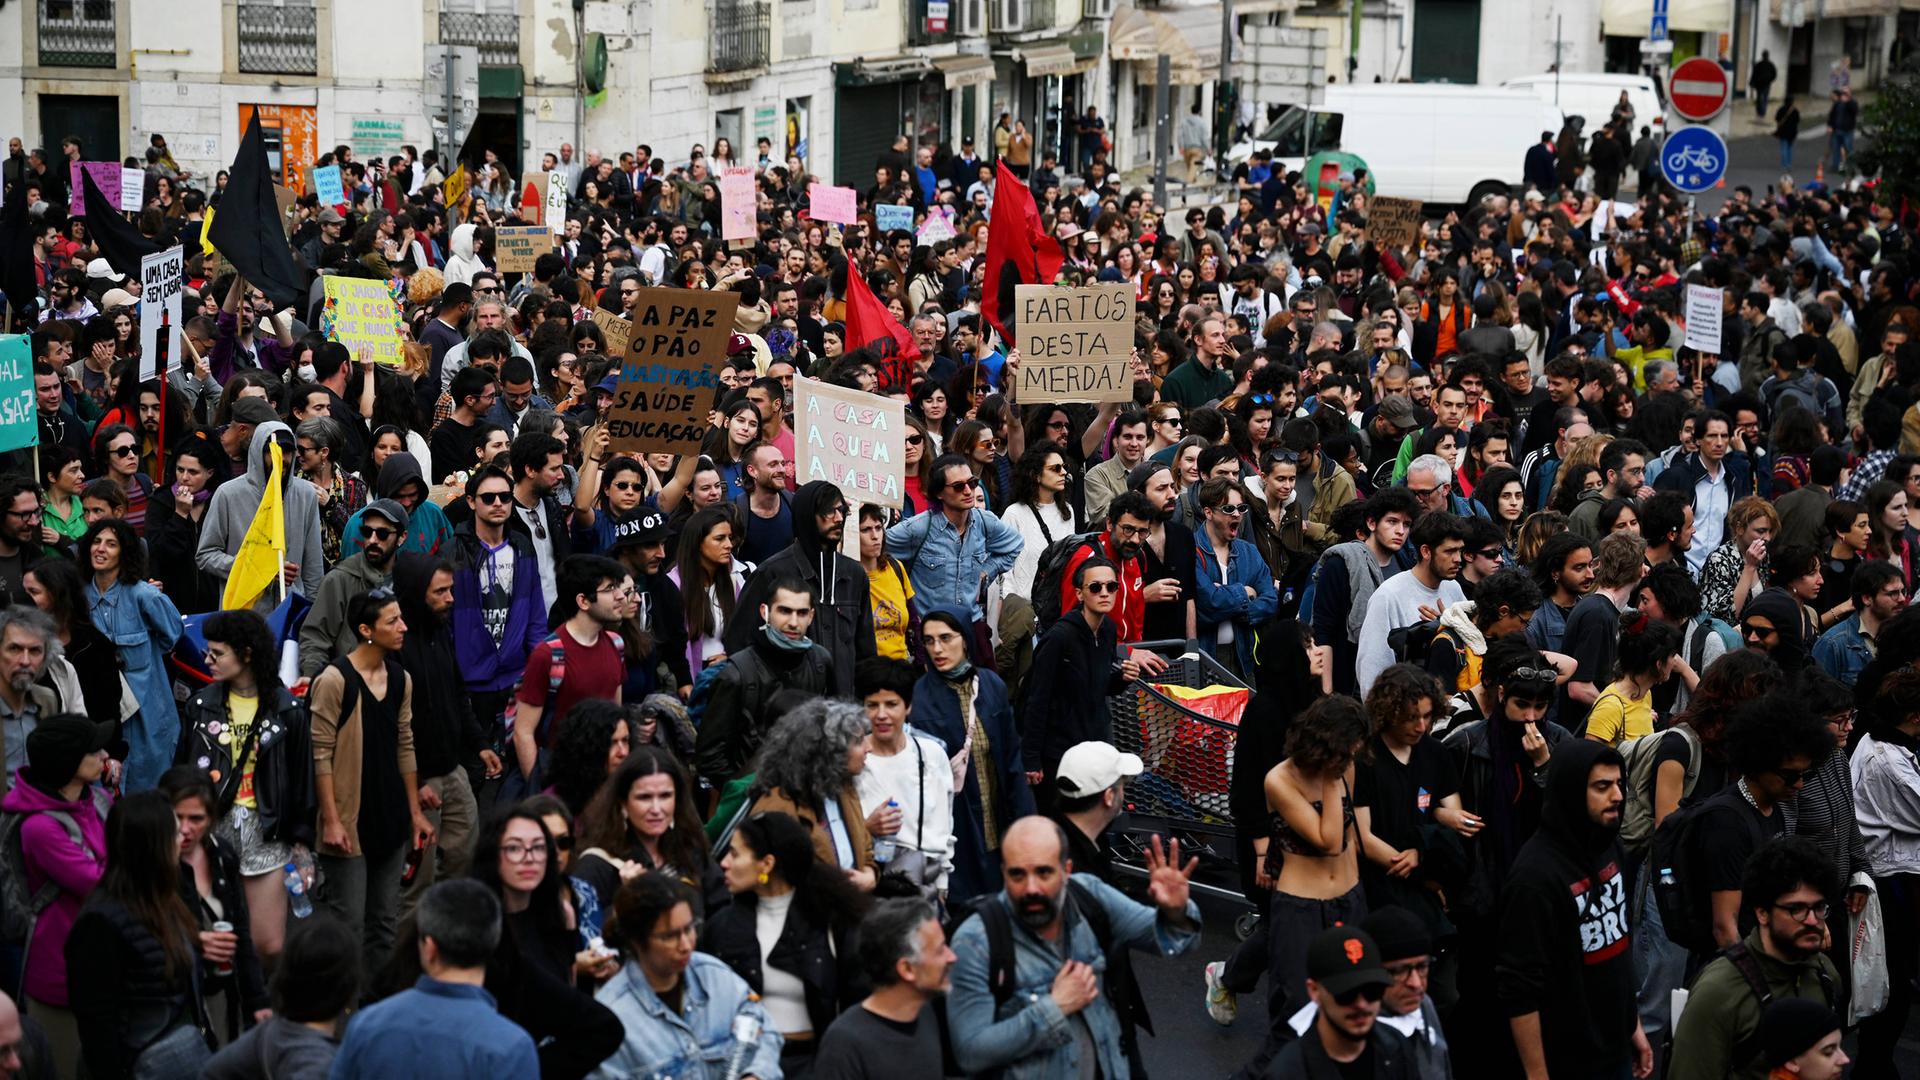 Immobilienmarkt - Erneut Proteste in Portugal gegen hohe Wohnungspreise